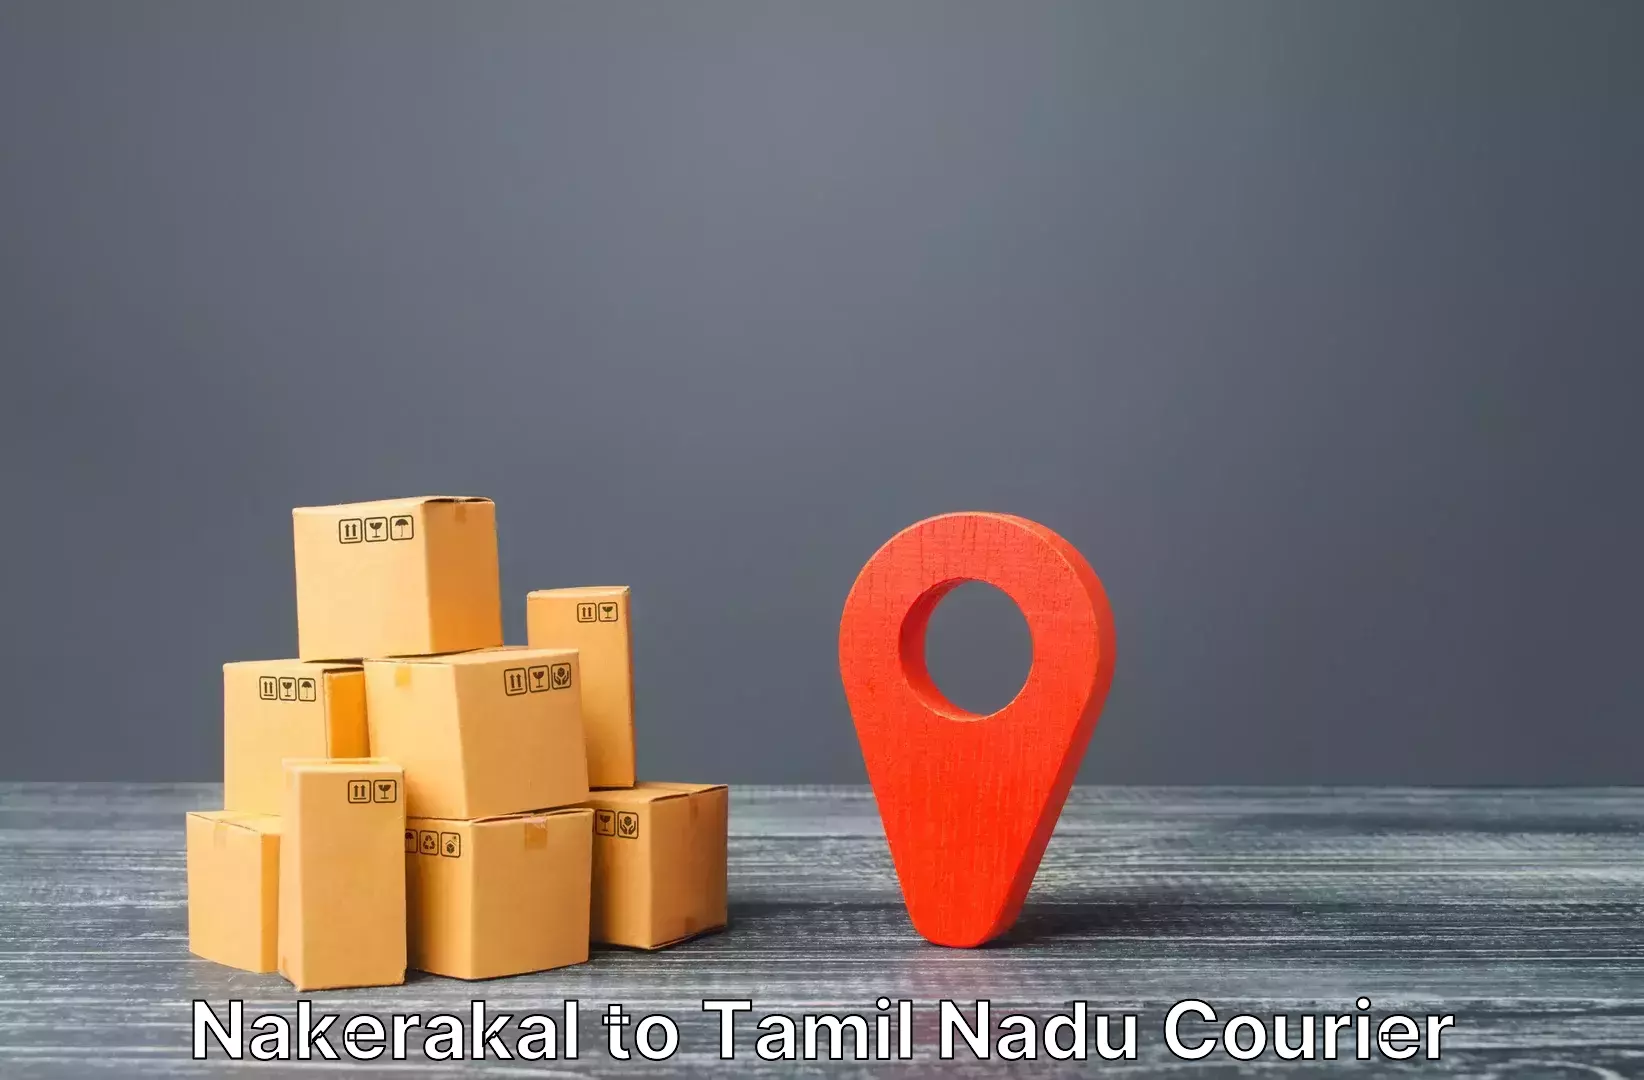 Luggage shipment processing Nakerakal to Kallakurichi